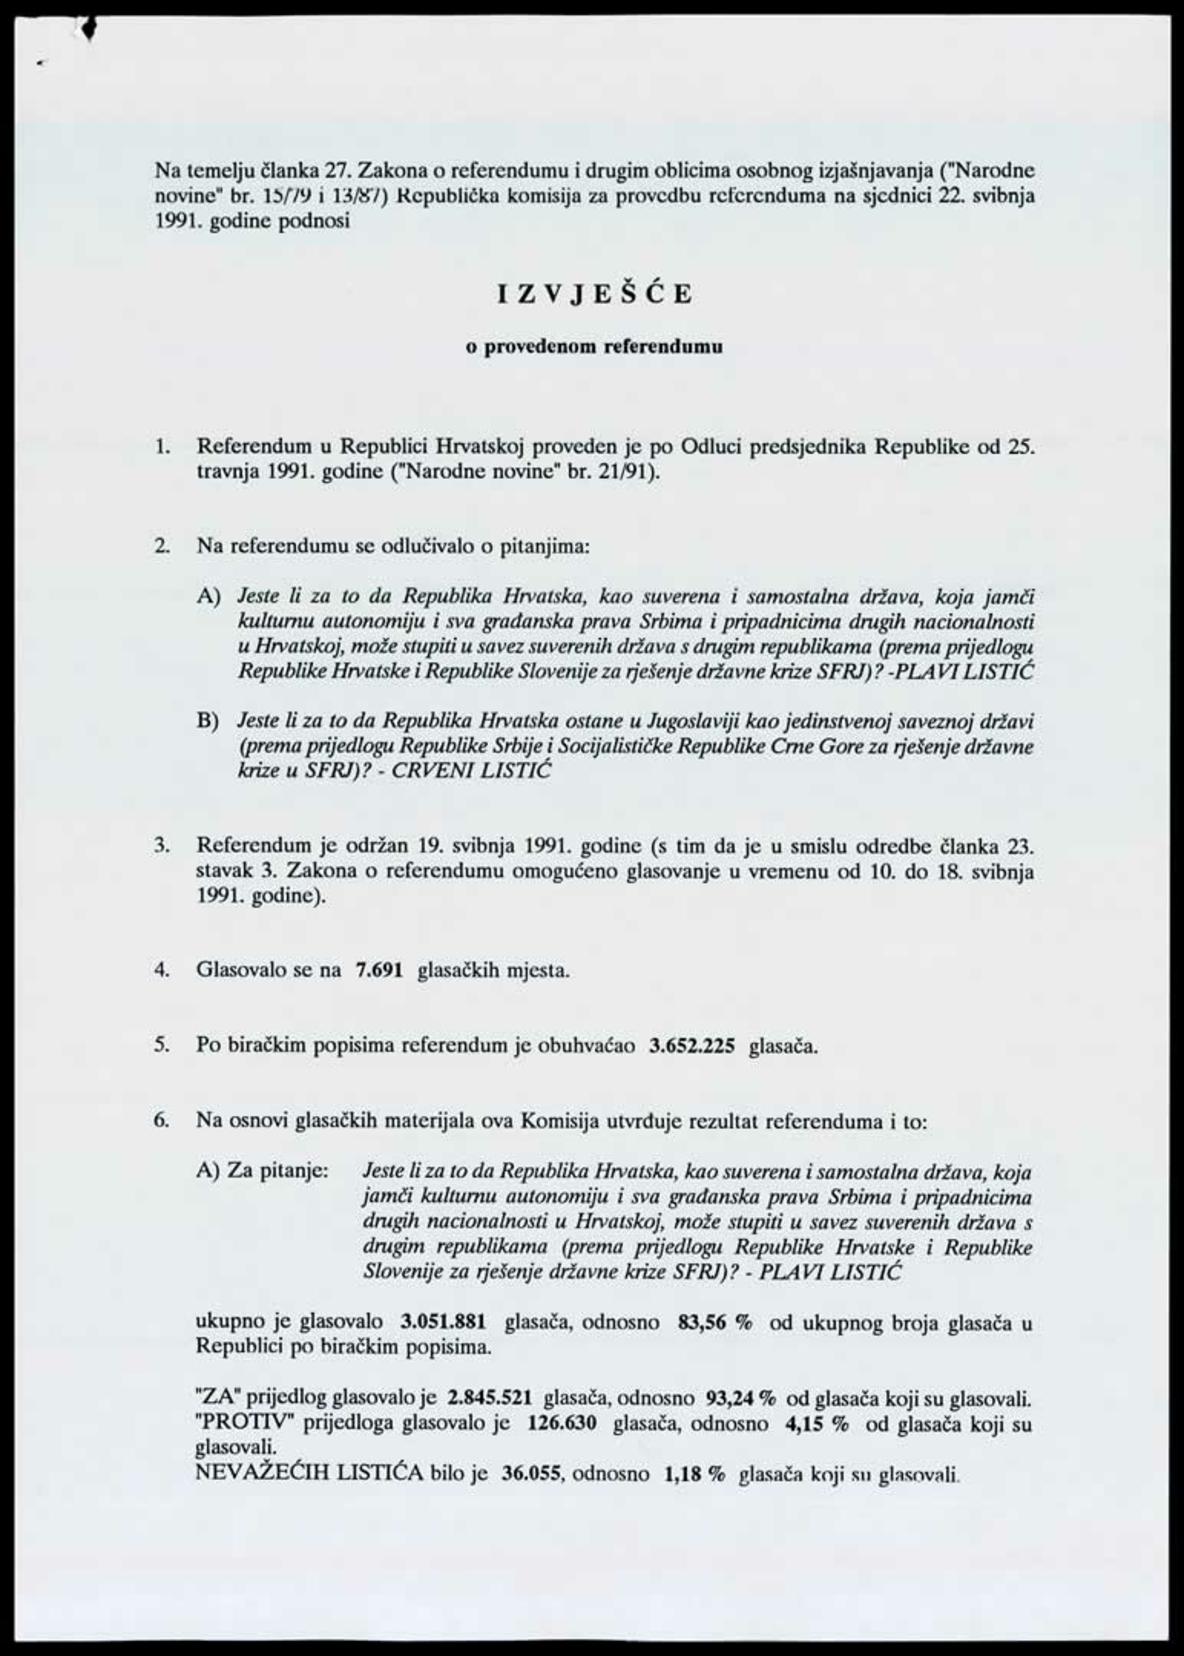 <b>Izvješće o provedenom referendumu</b>, 22. svibnja 1991.<br><br>
HR-HDA-1741. Ured predsjednika RH Franje Tuđmana. Pismohrana, fasc. 186
